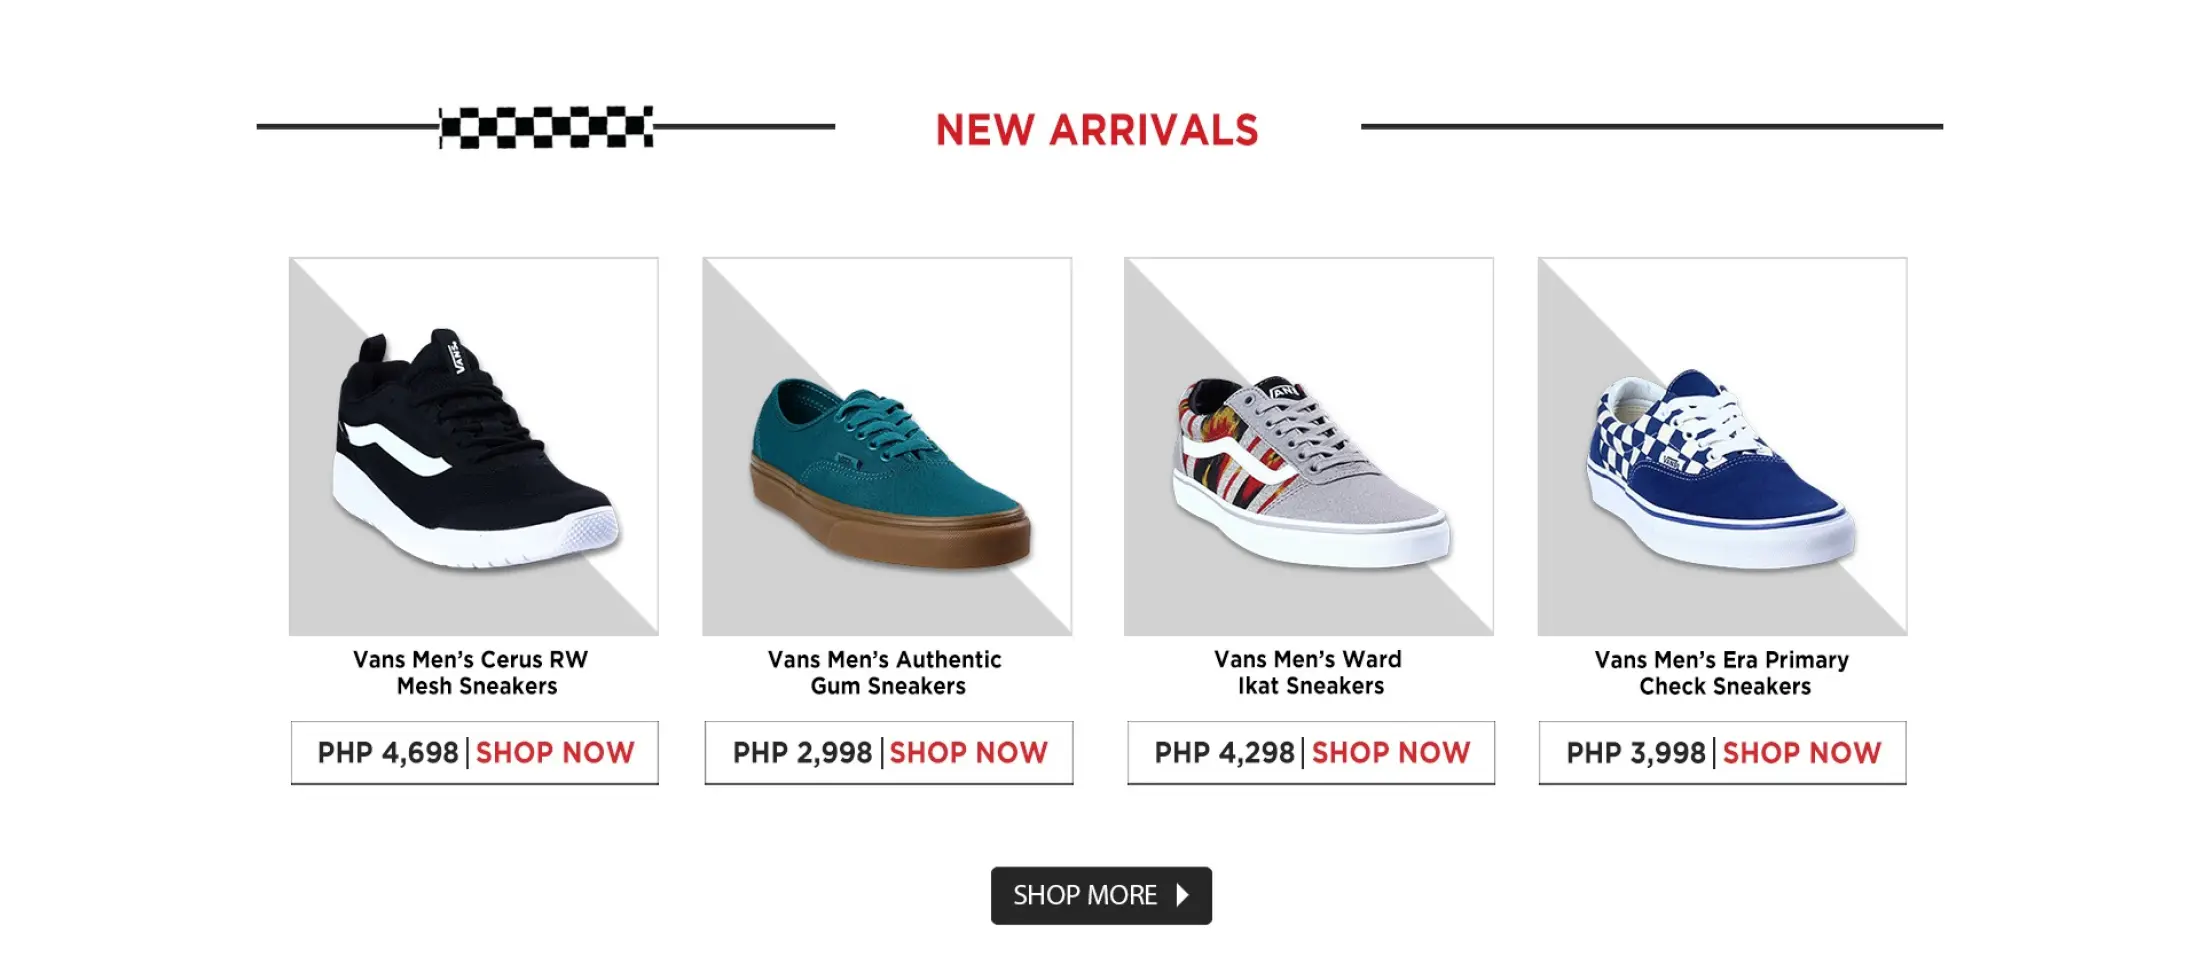 ويسكي vans shoes philippines price 